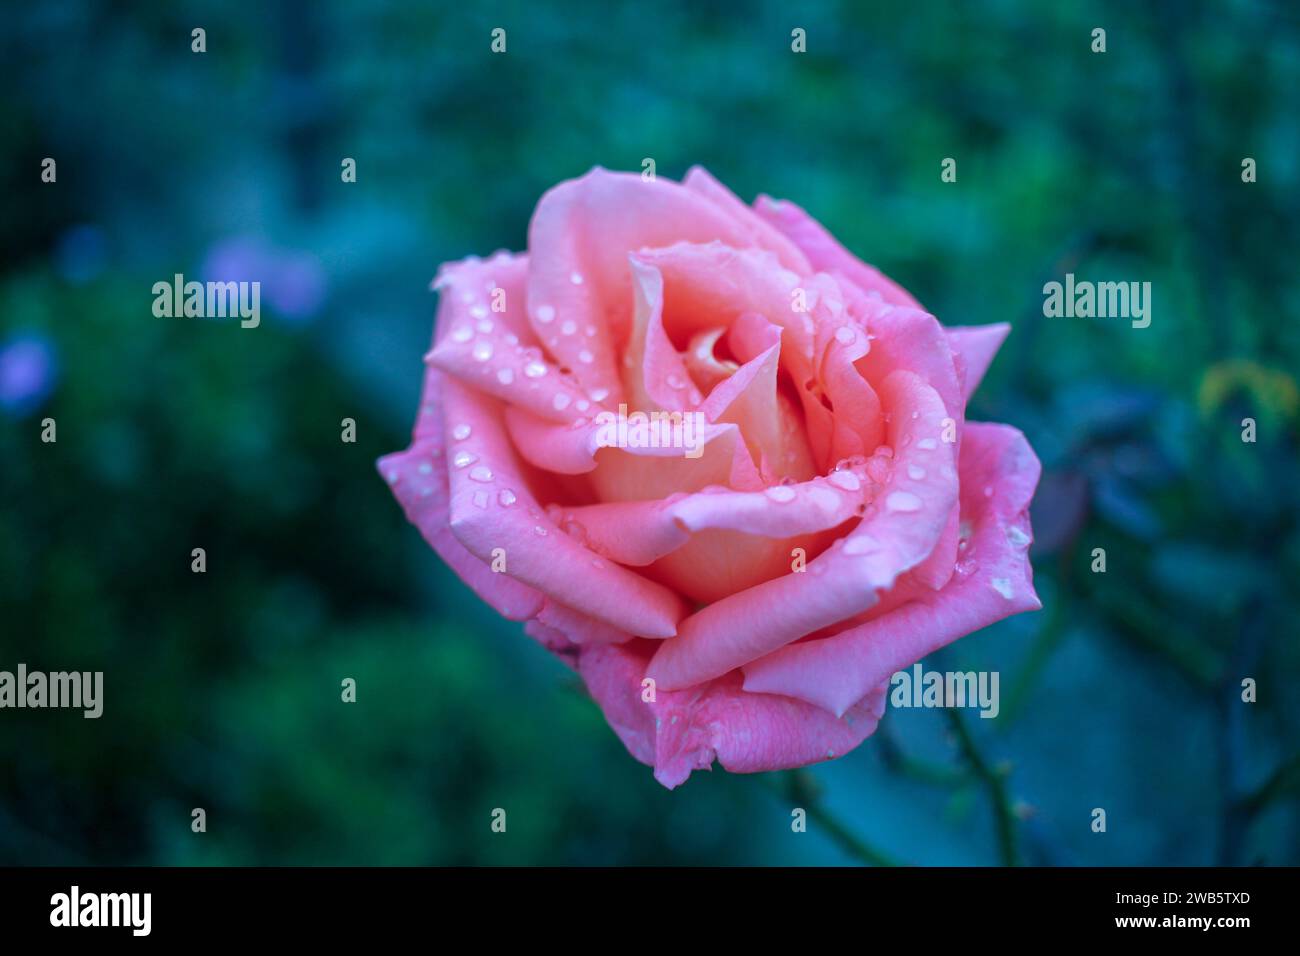 Eine rosafarbene Rose mit Tautropfen, die das Wesen eines Frühlingsmorgens einfängt, und jeder Tropfen ist ein schimmerndes Zeugnis der Kunstfertigkeit der Natur Stockfoto